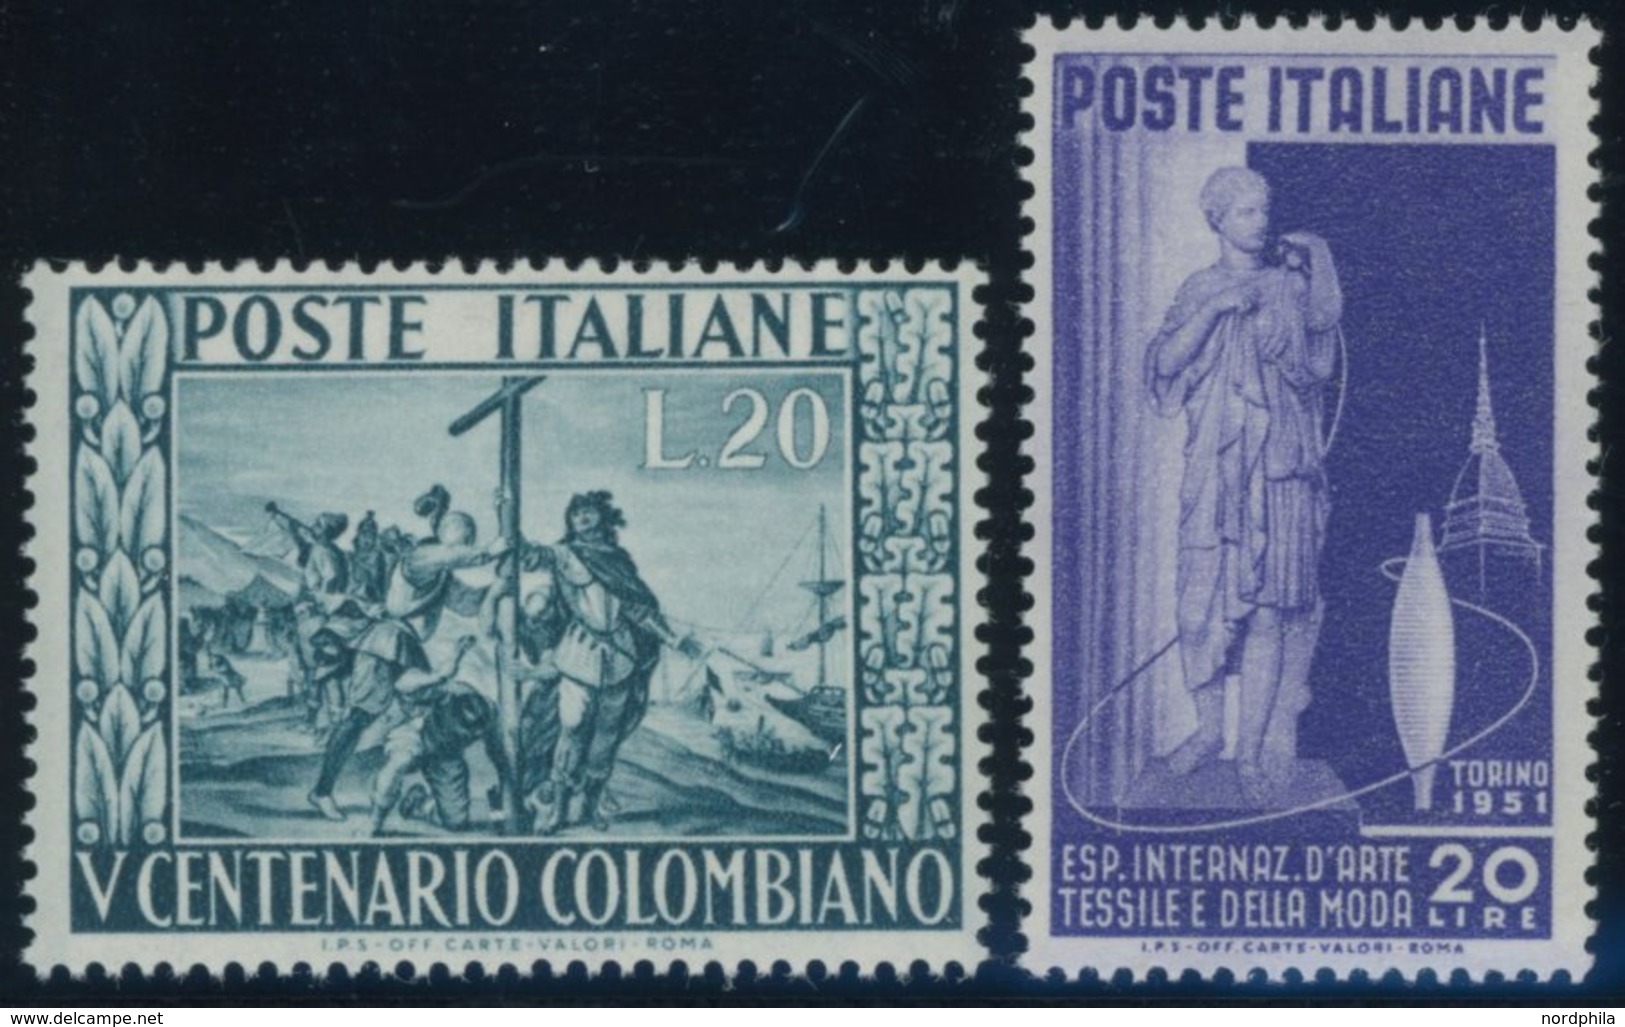 ITALIEN 832/3 **, 1951, Textilausstellung Und Kolumbus, Postfrisch, 2 Prachtwerte, Mi. 60.- - Unclassified